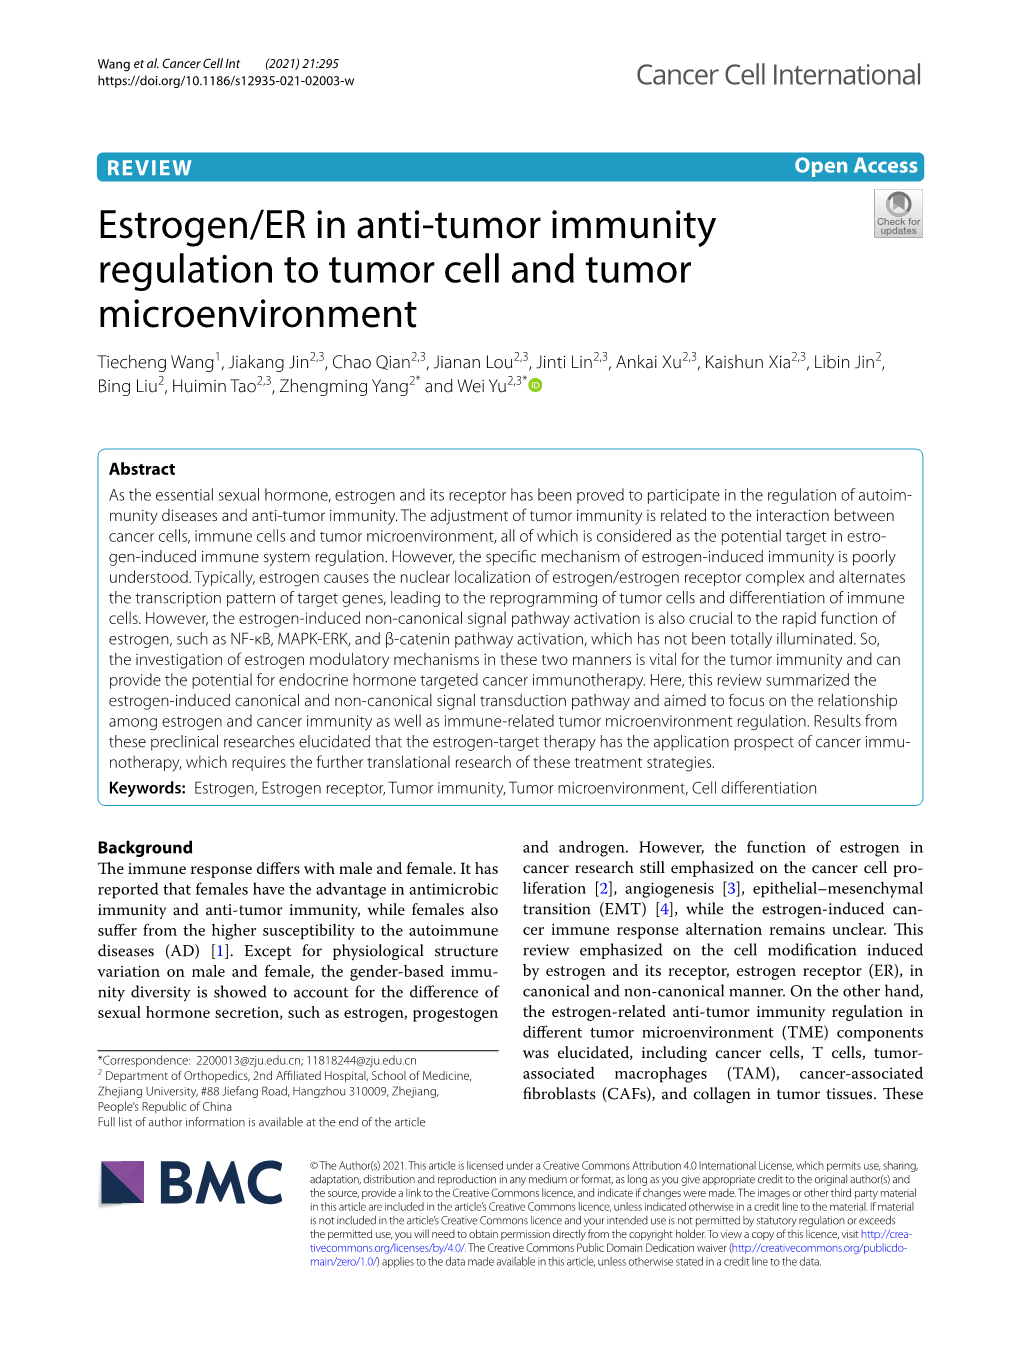 Estrogen/ER in Anti-Tumor Immunity Regulation to Tumor Cell And